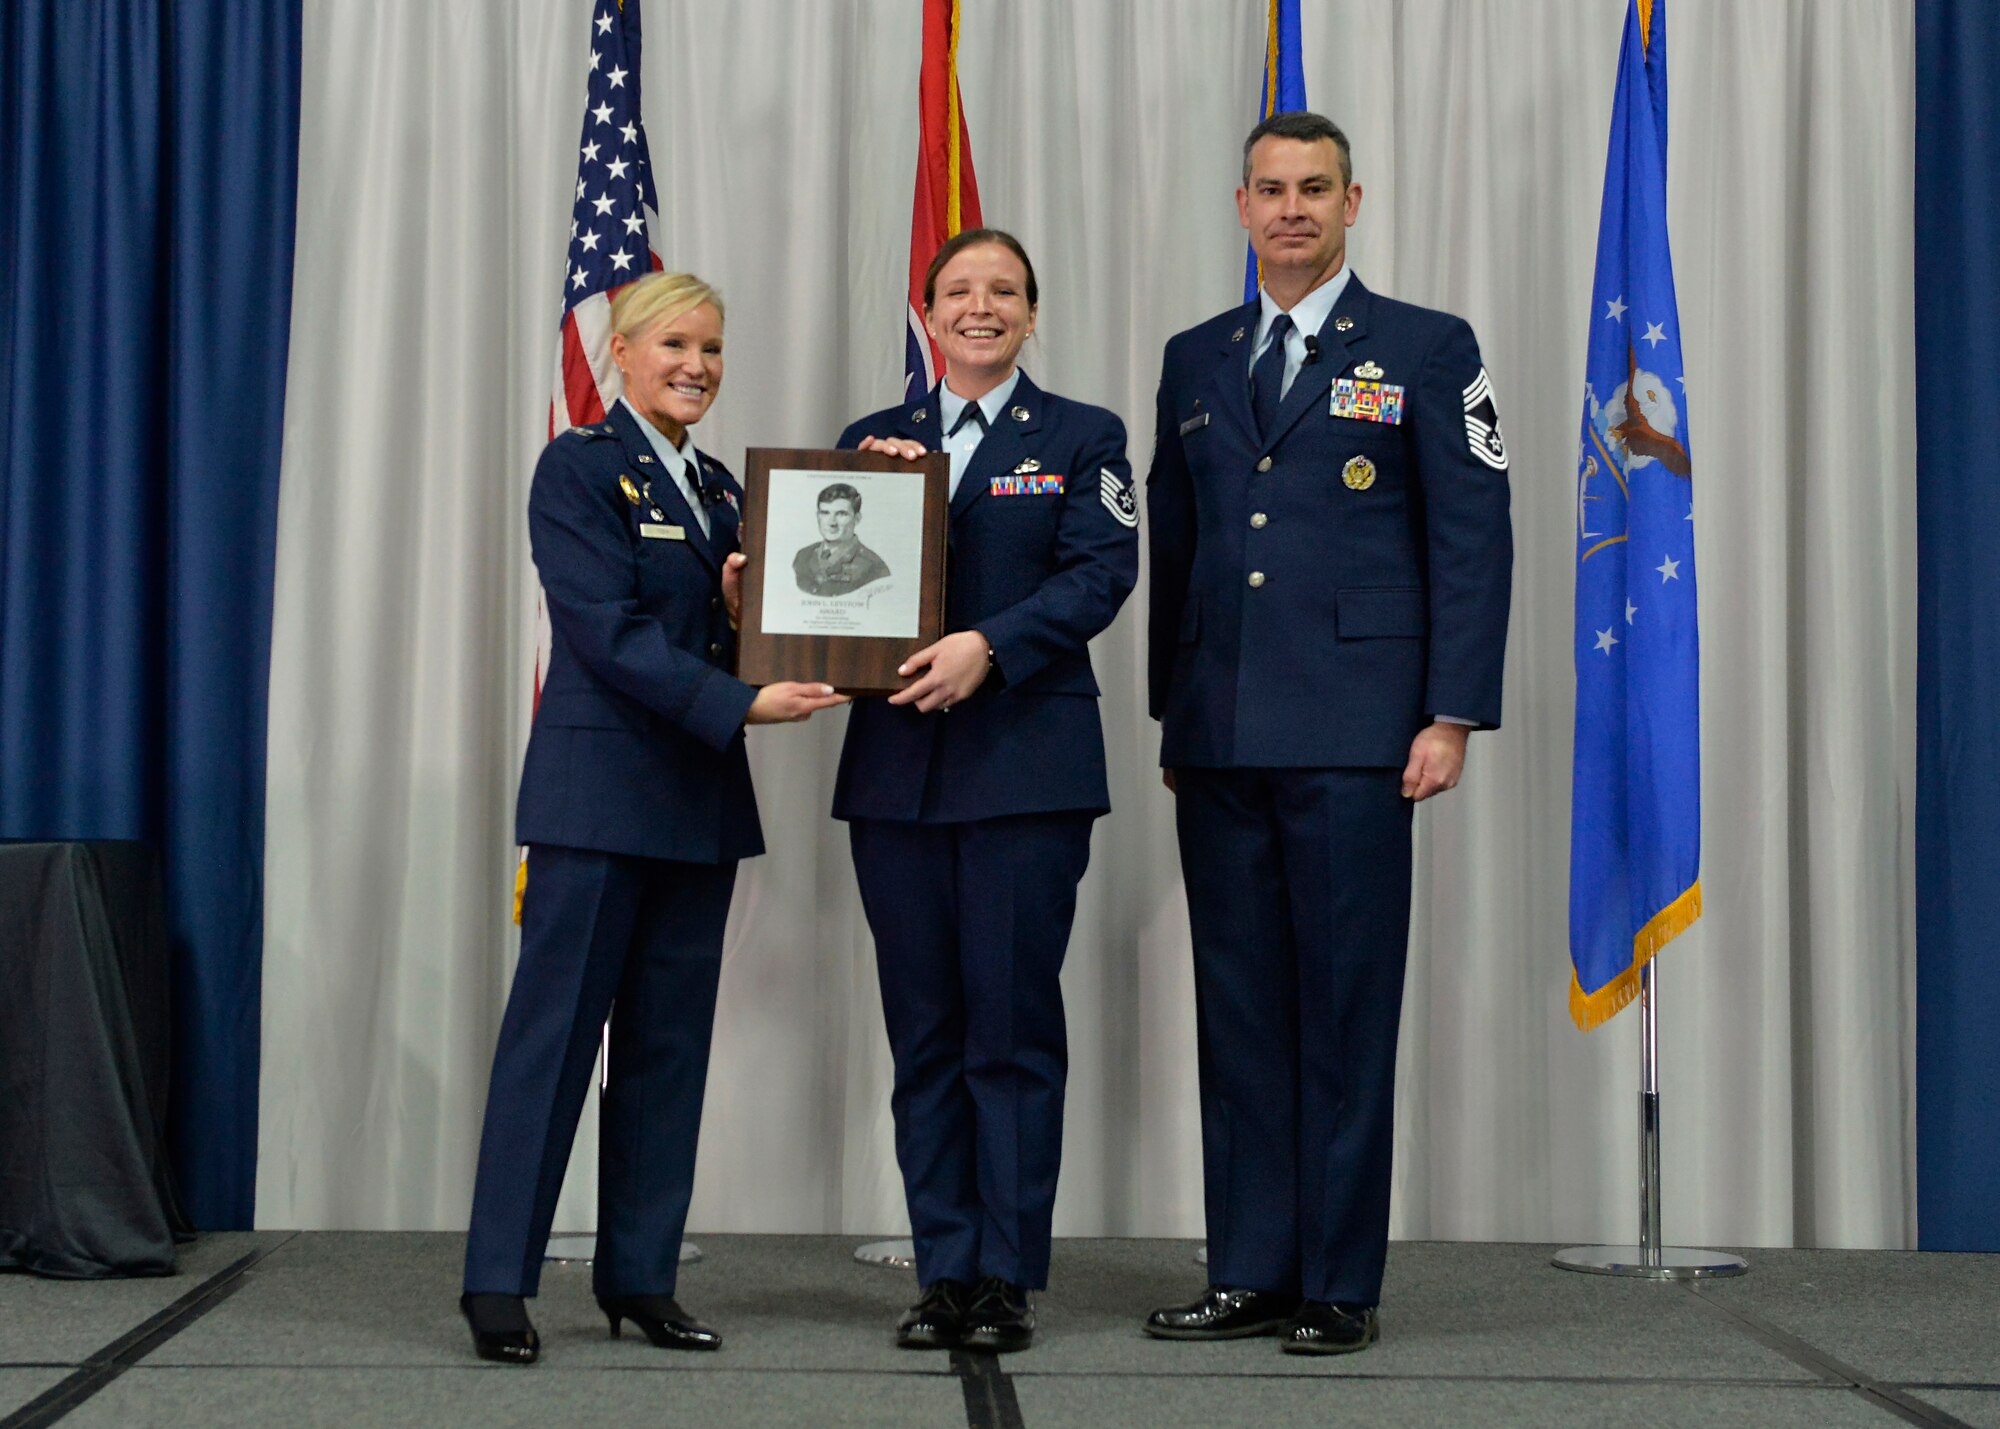 Airman receives an award during graduation.